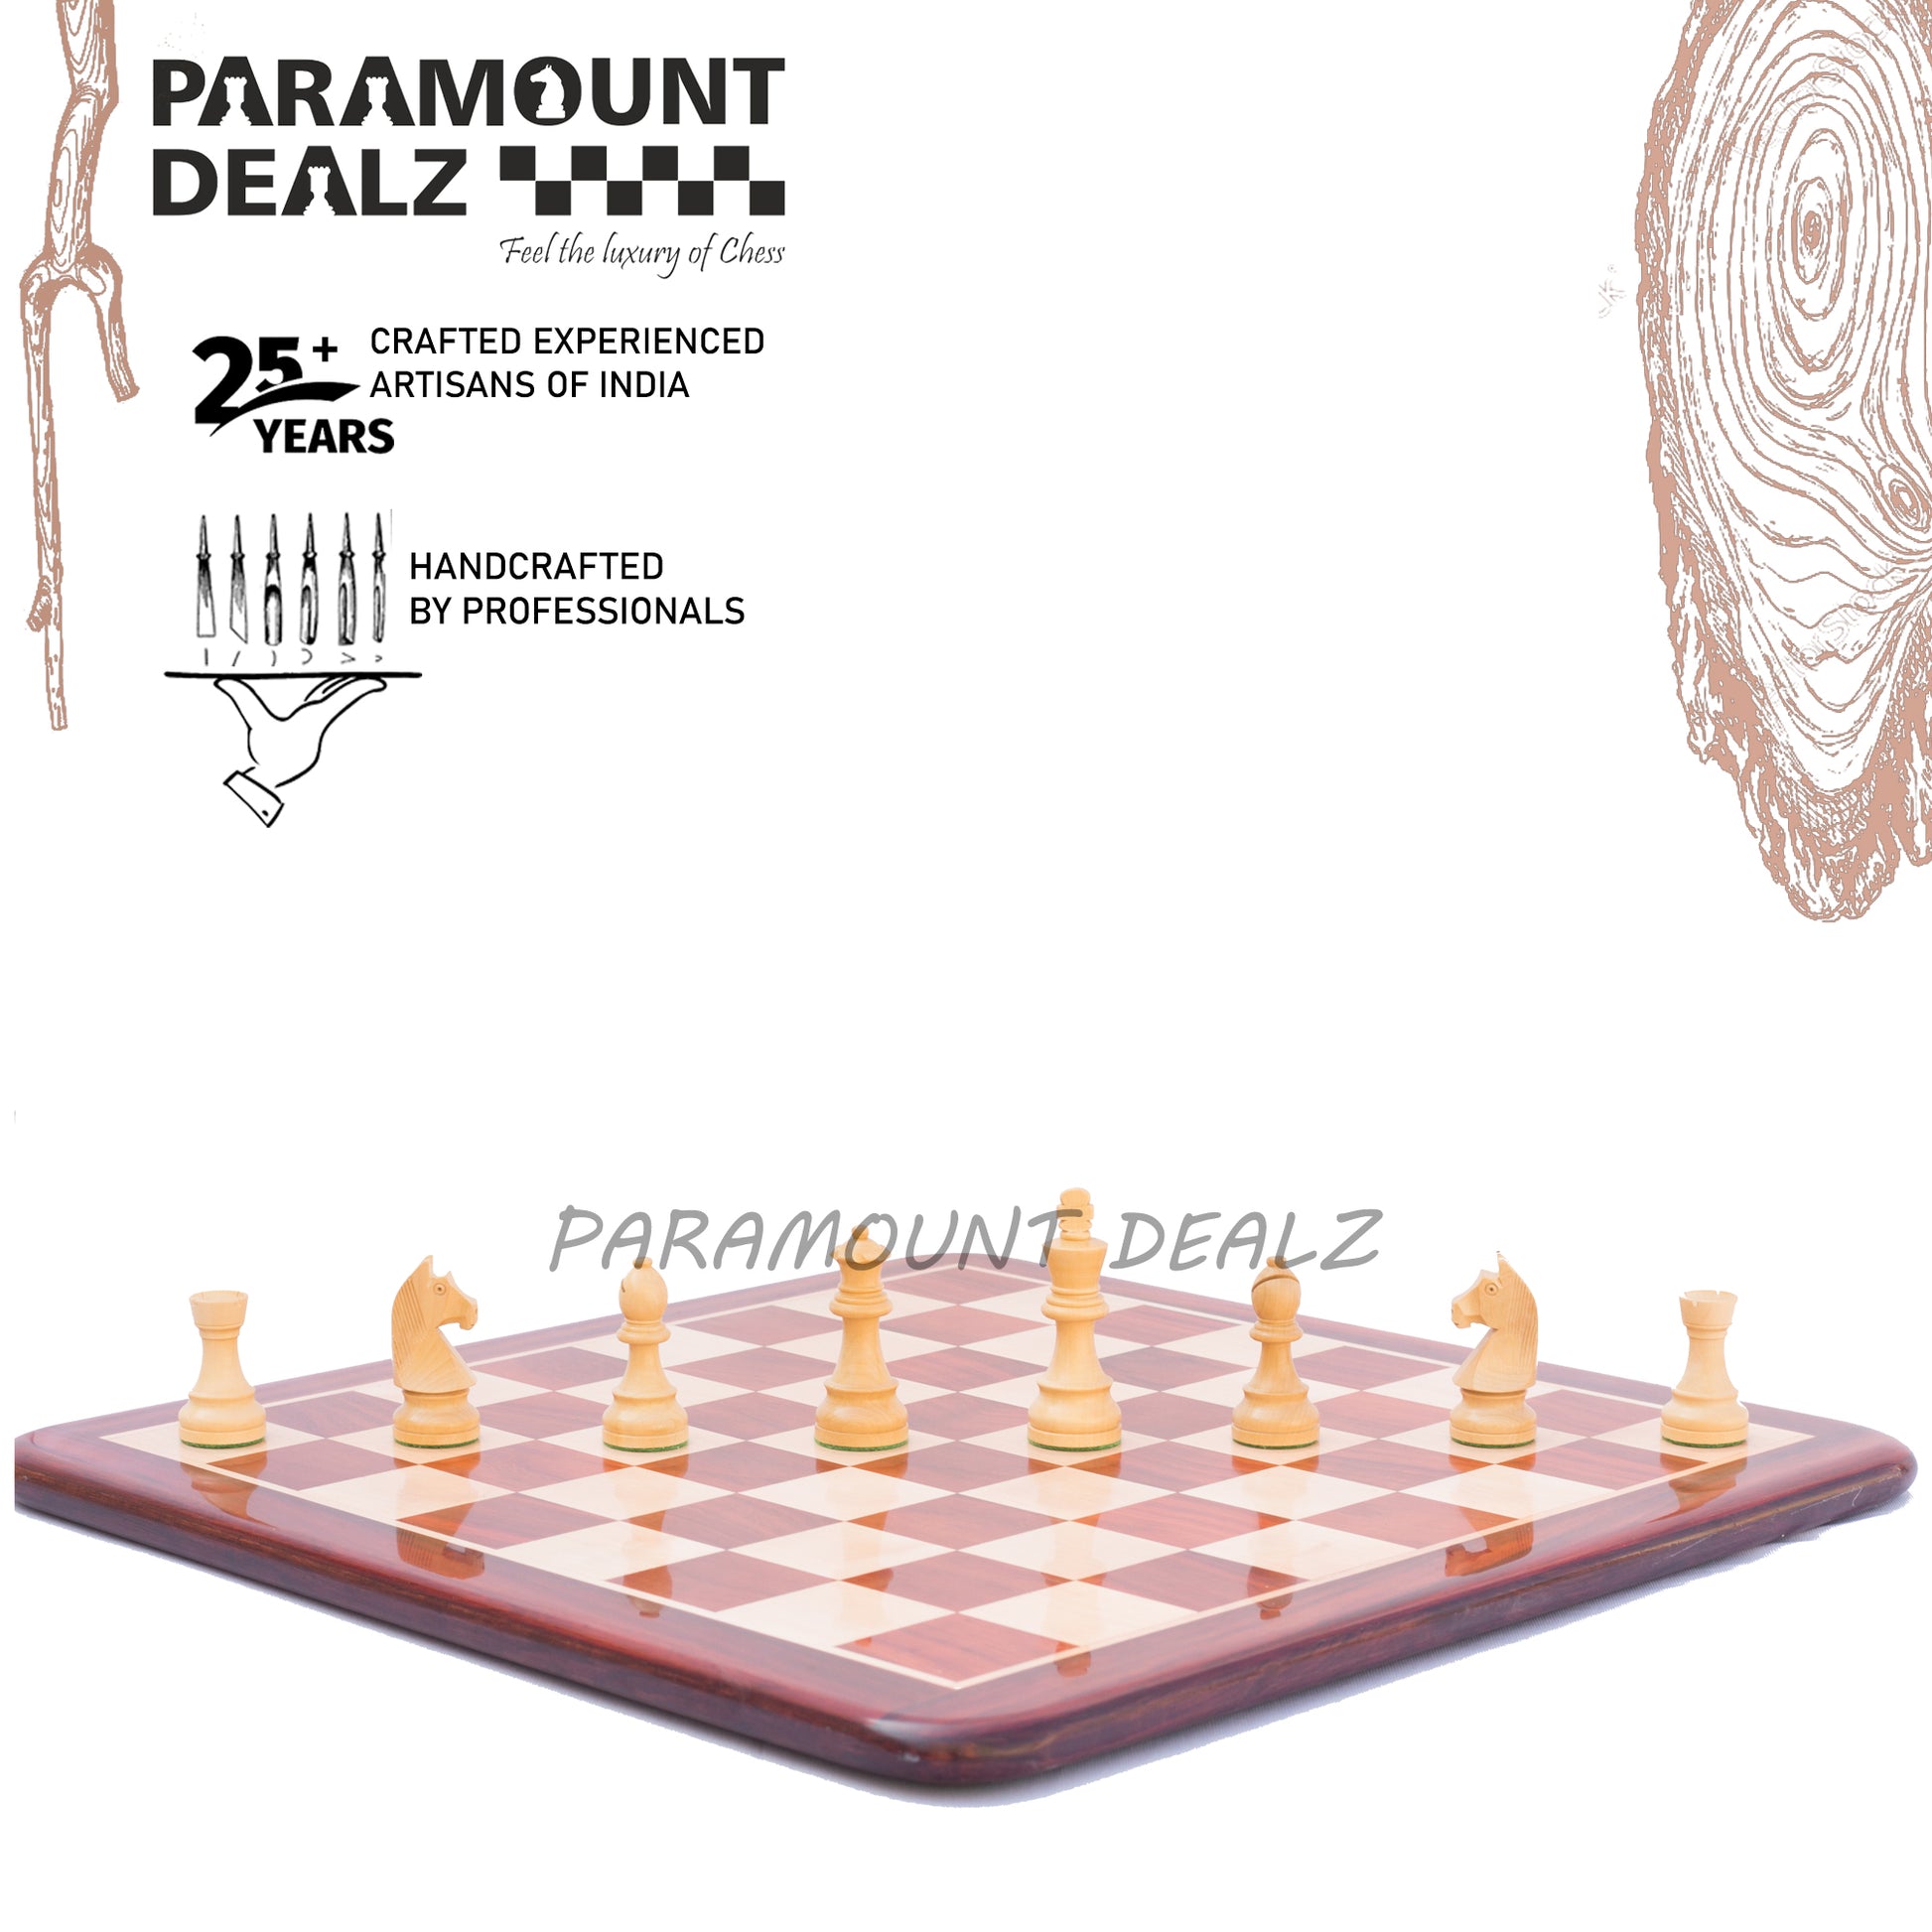 Petrick Budrosewood Chess Set